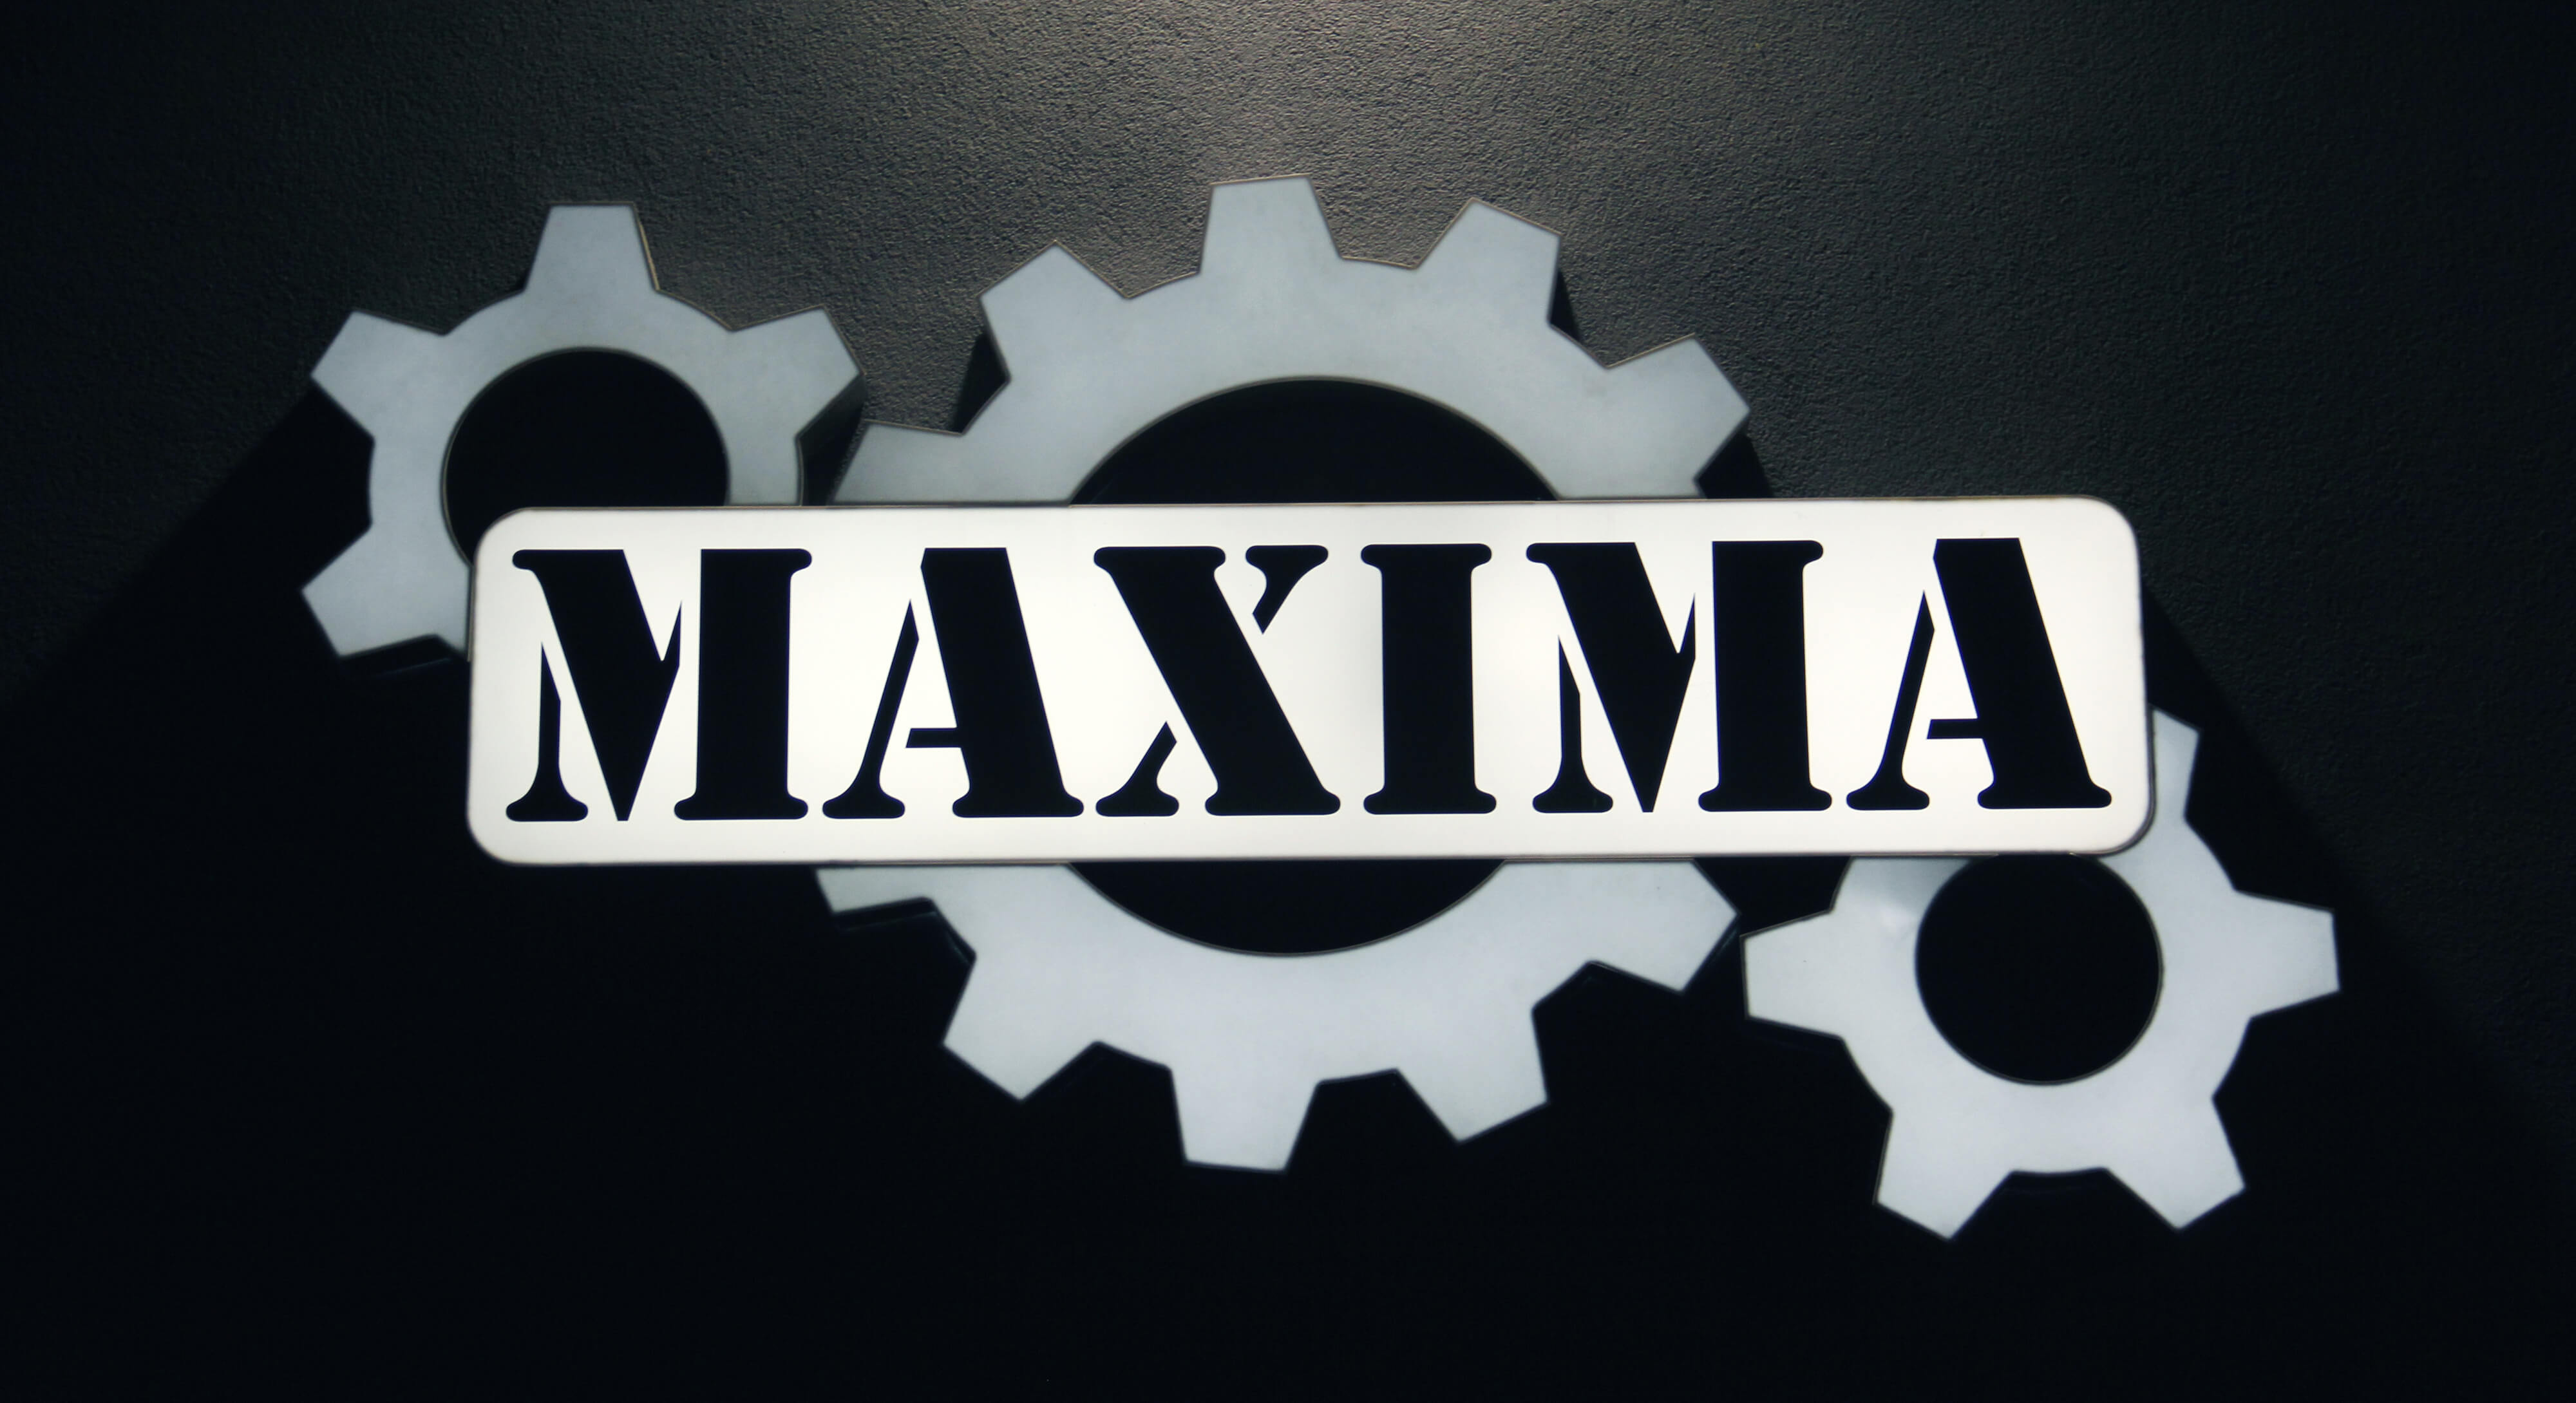 Máxima - Maxima - panel de leds en la pared con el logotipo de la empresa, hecho de plexiglás